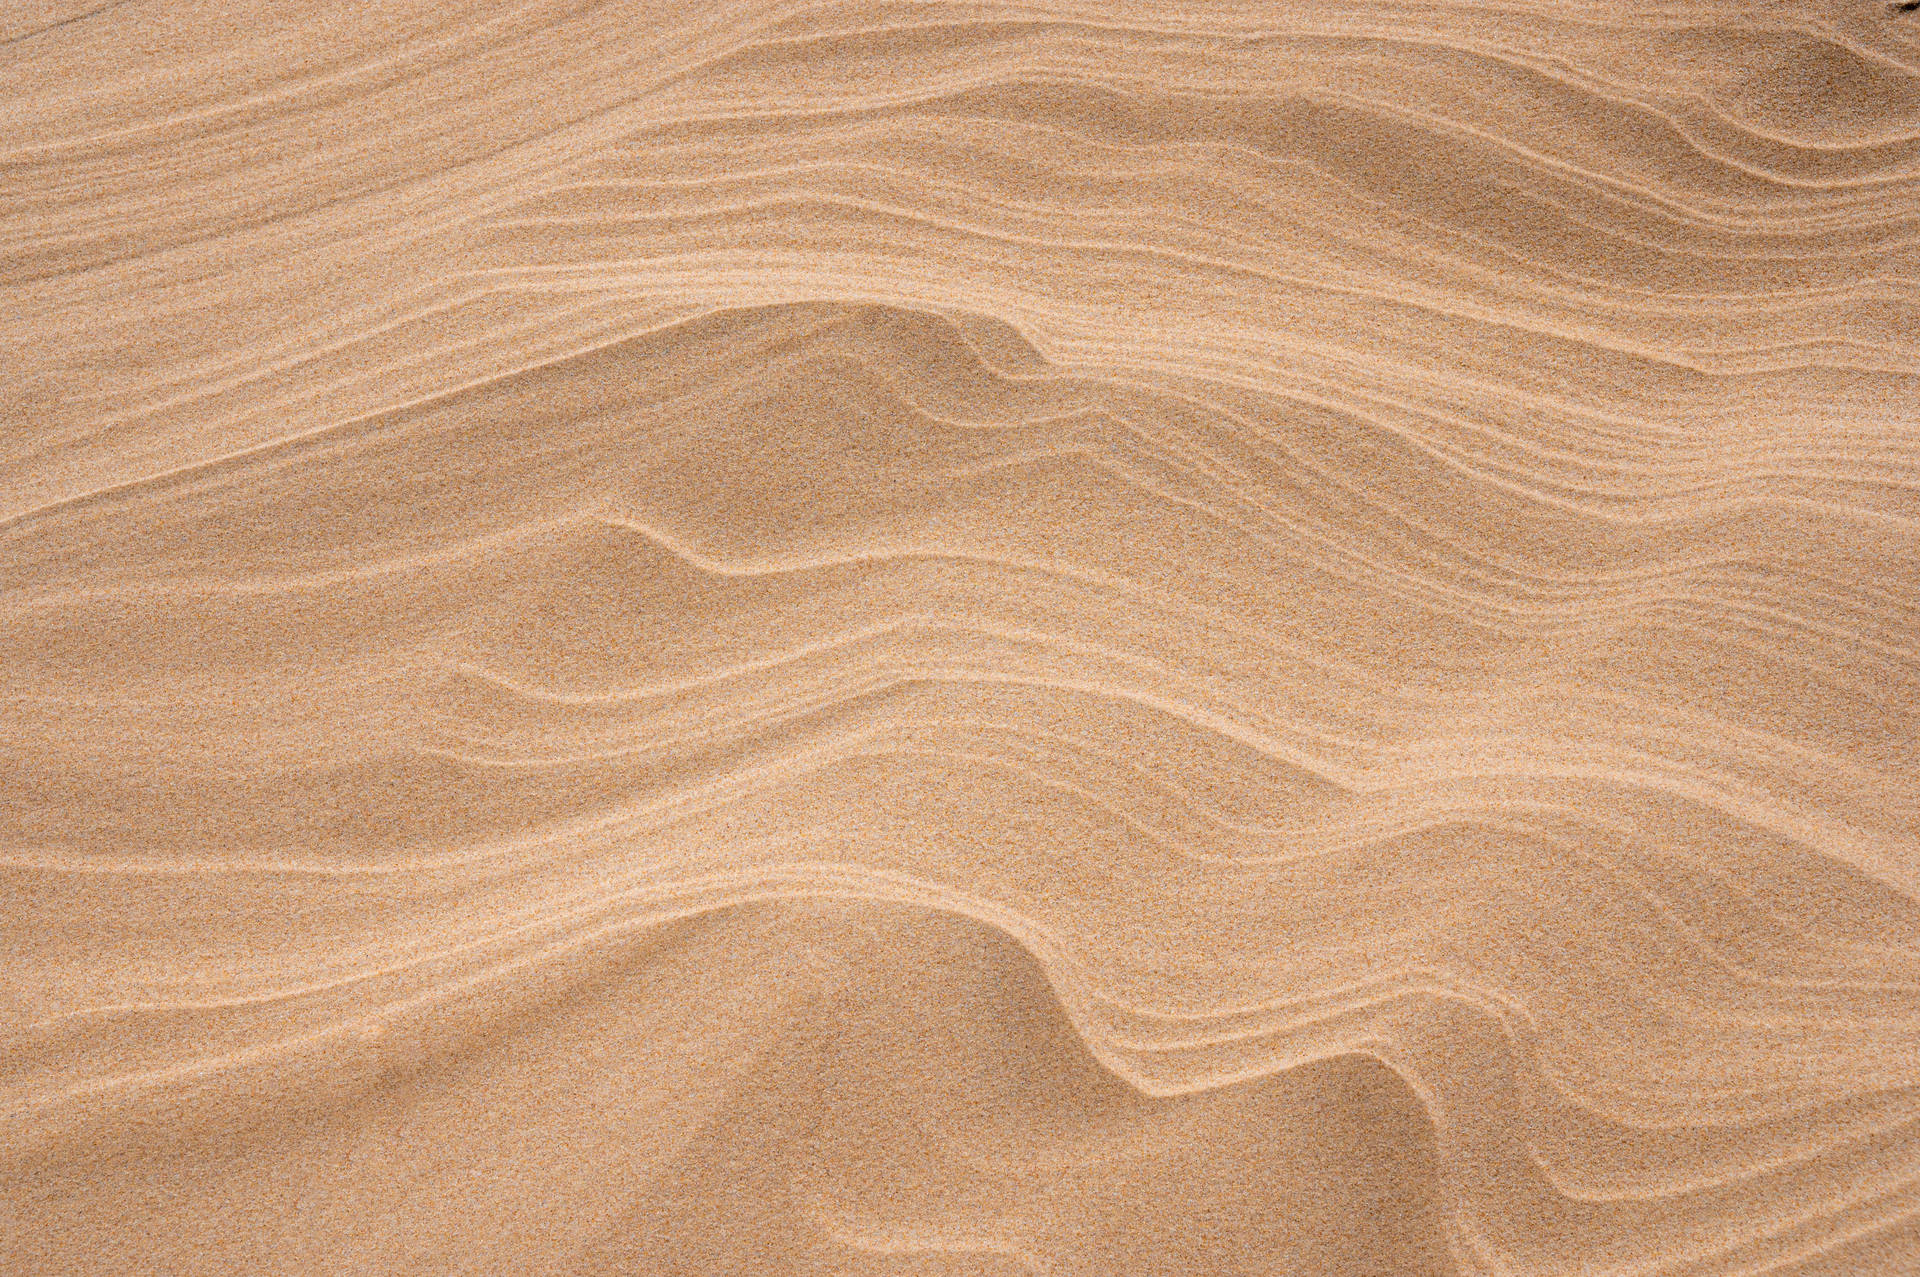 Aesthetic Brown Desert Background